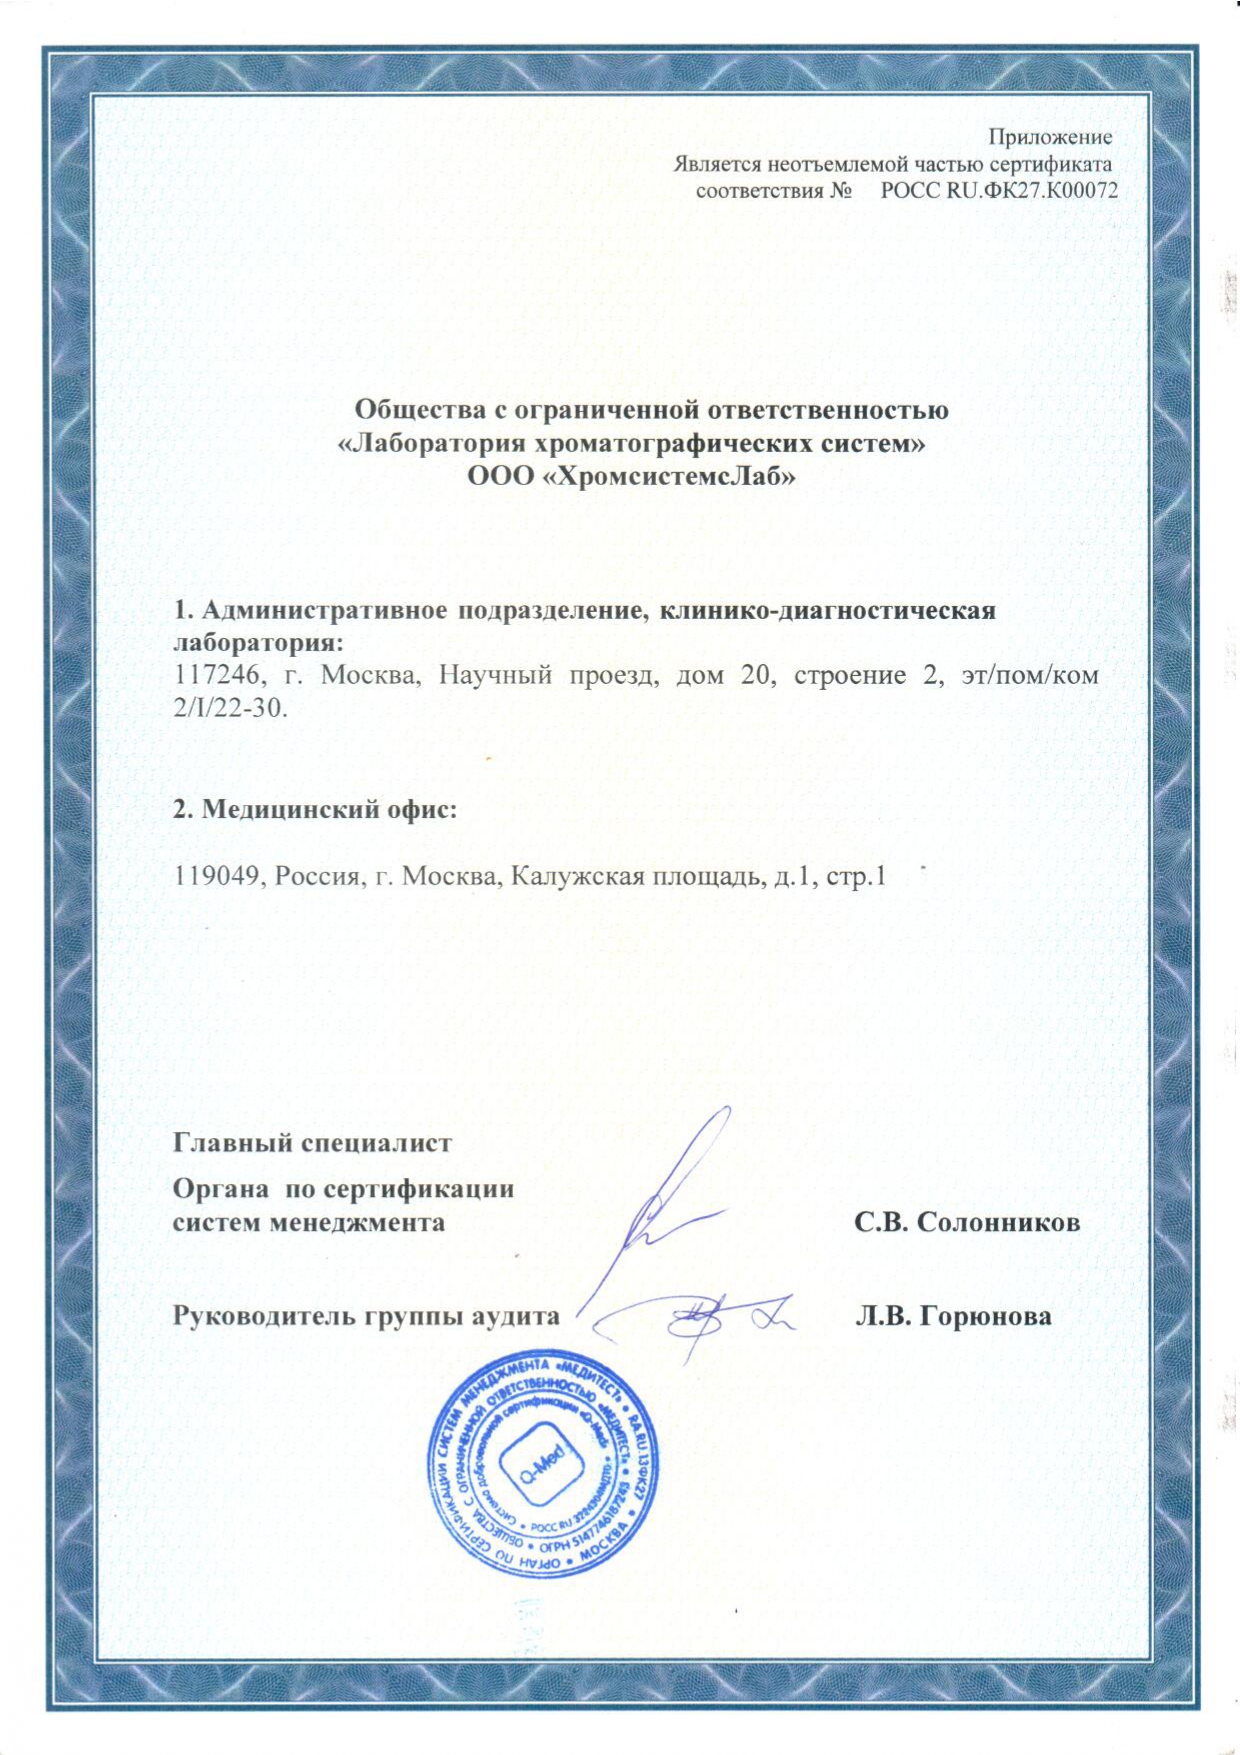 Приложение к сертификату соответствия ГОСТ Р ИСО 9001 и ГОСТ Р ИСО 15189